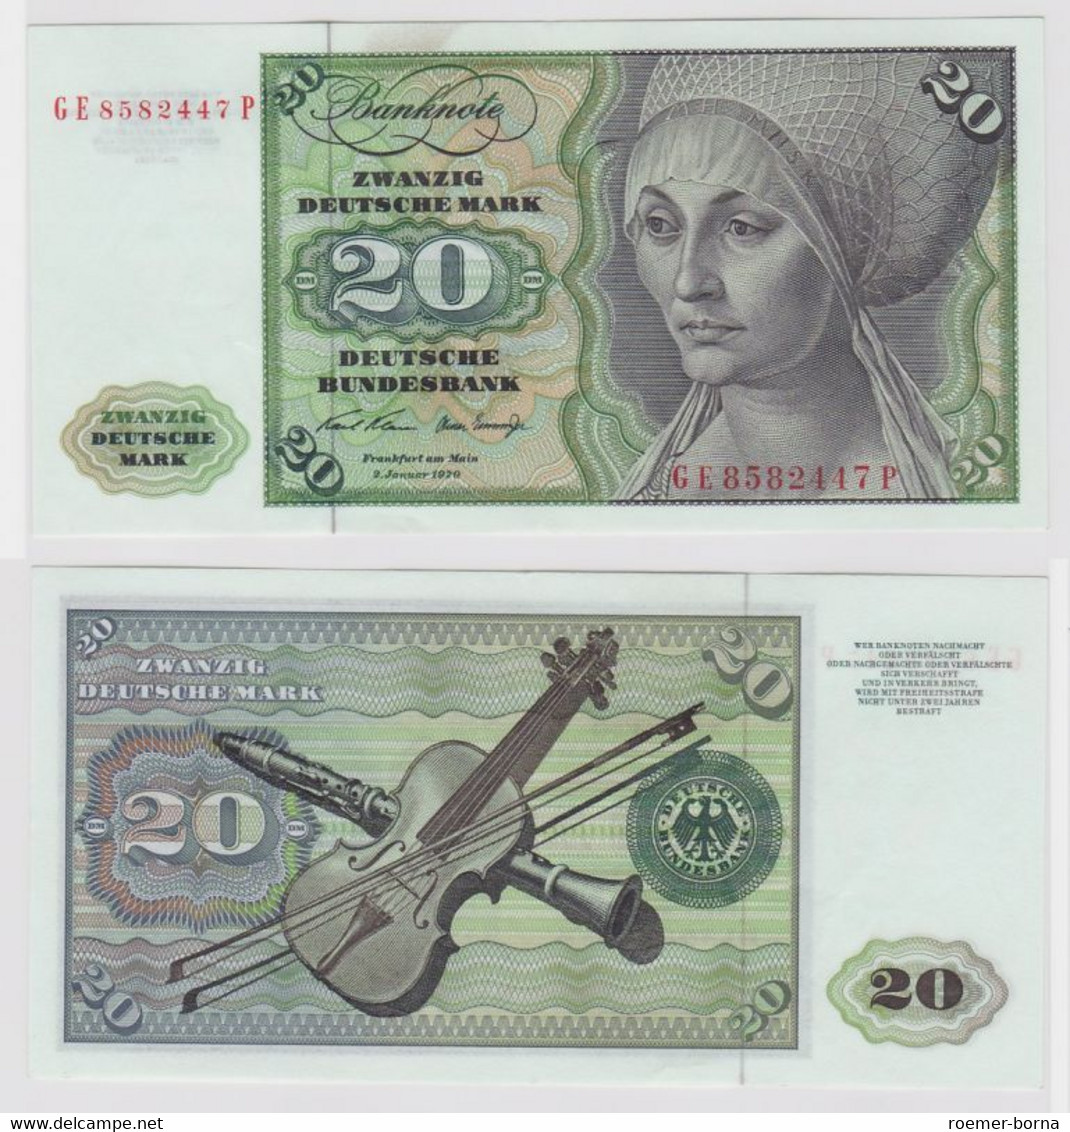 T147949 Banknote 20 DM Deutsche Mark Ro. 271b Schein 2.Jan. 1970 KN GE 8582447 P - 20 Deutsche Mark